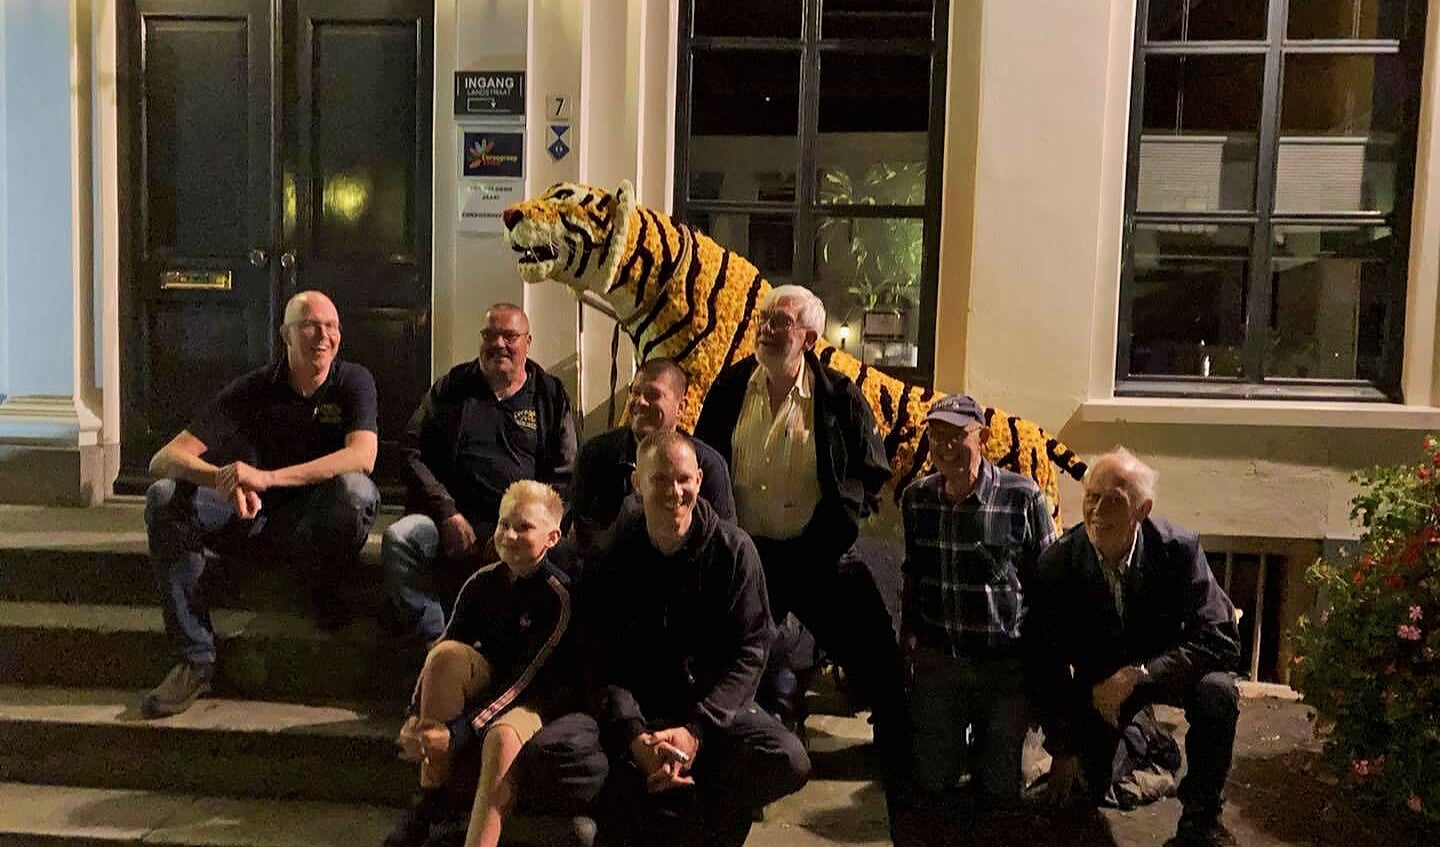 De tijger is geplaatst voor het gemeentehuis. Foto: Corsogroep 2002